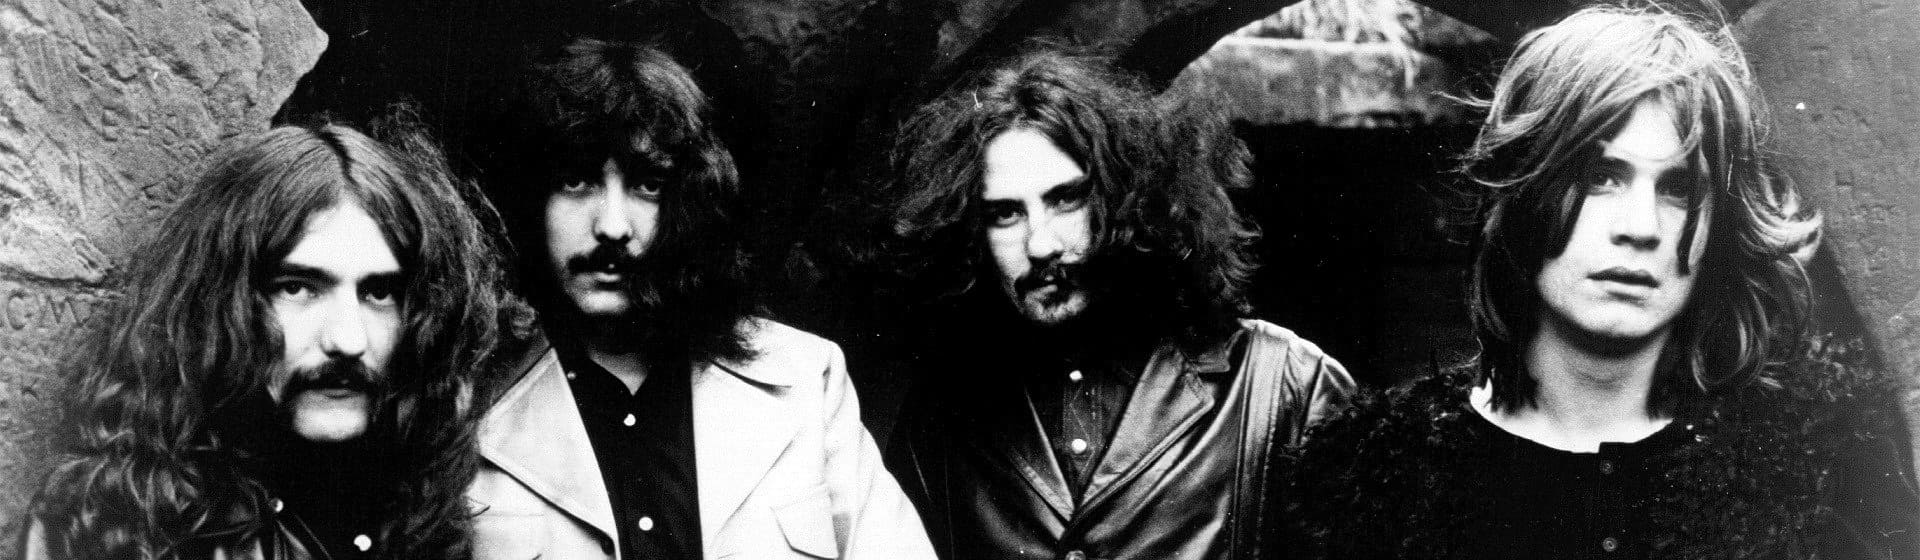 Black Sabbath - Мерч и одежда с атрибутикой